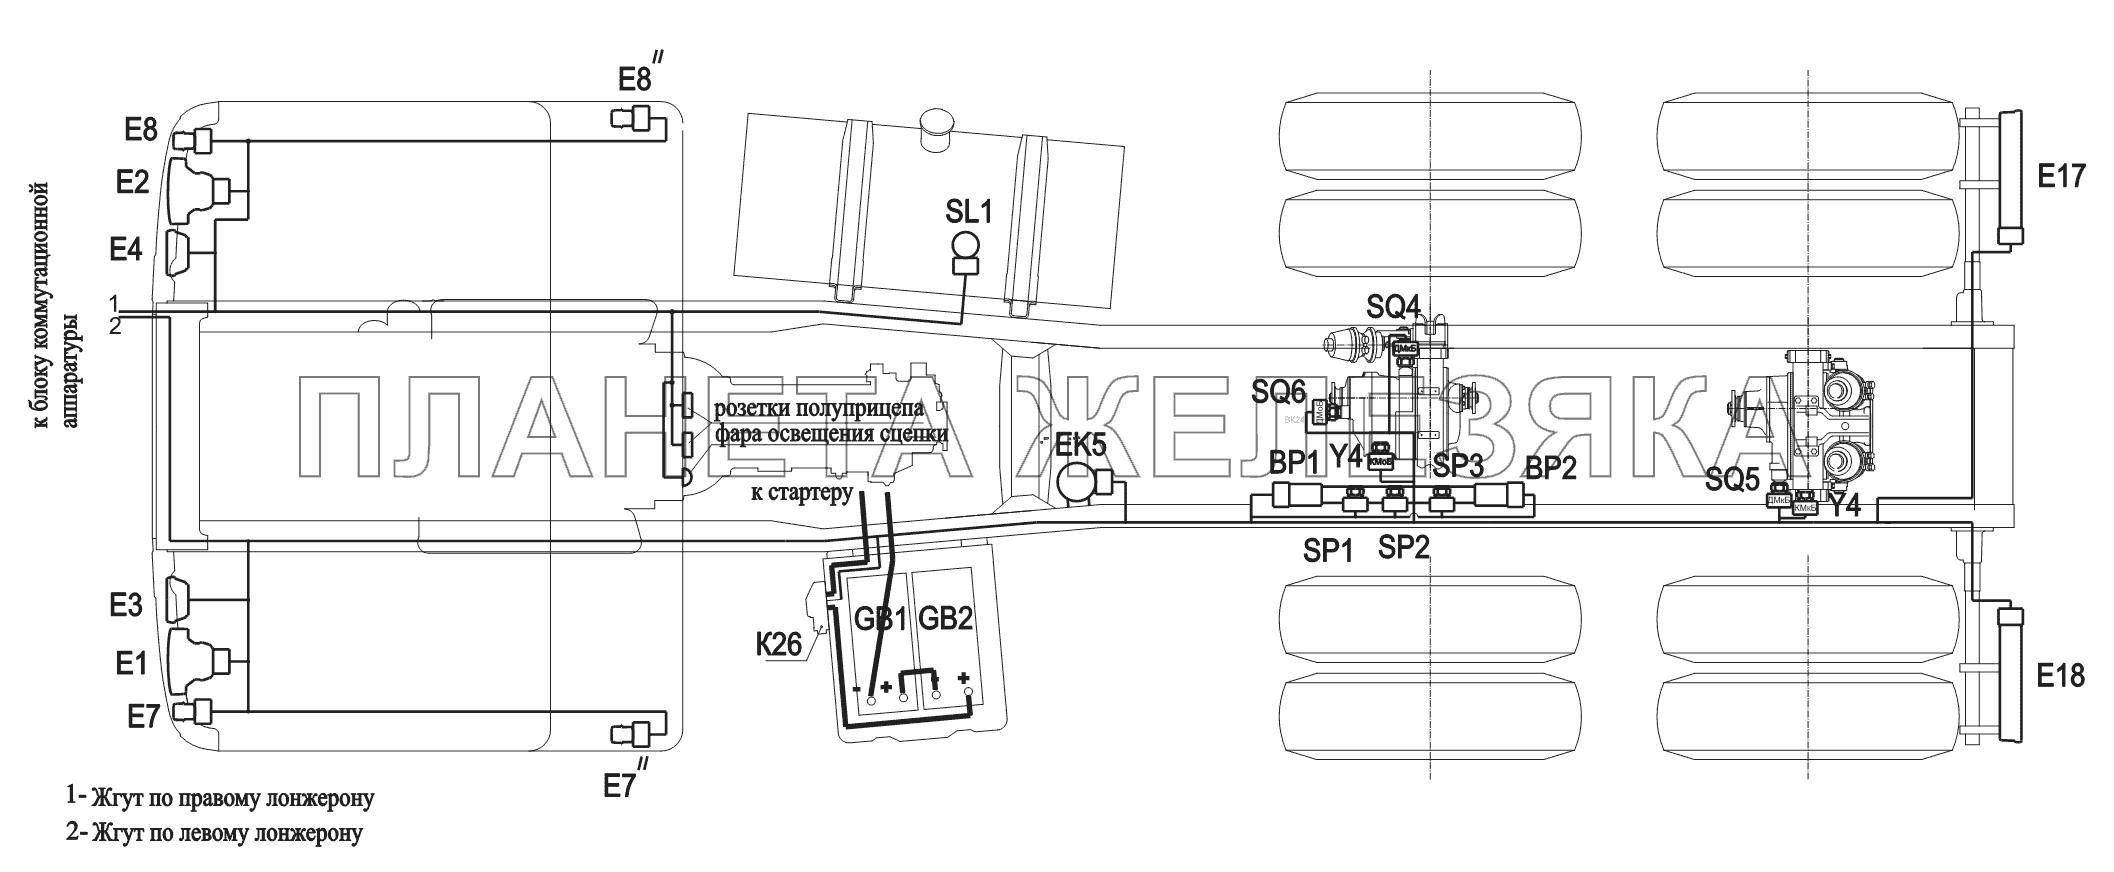 Расположение разъемов и элементов электрооборудования на шасси 6430A8 МАЗ-6430A8 (5440A8, 5440A5)